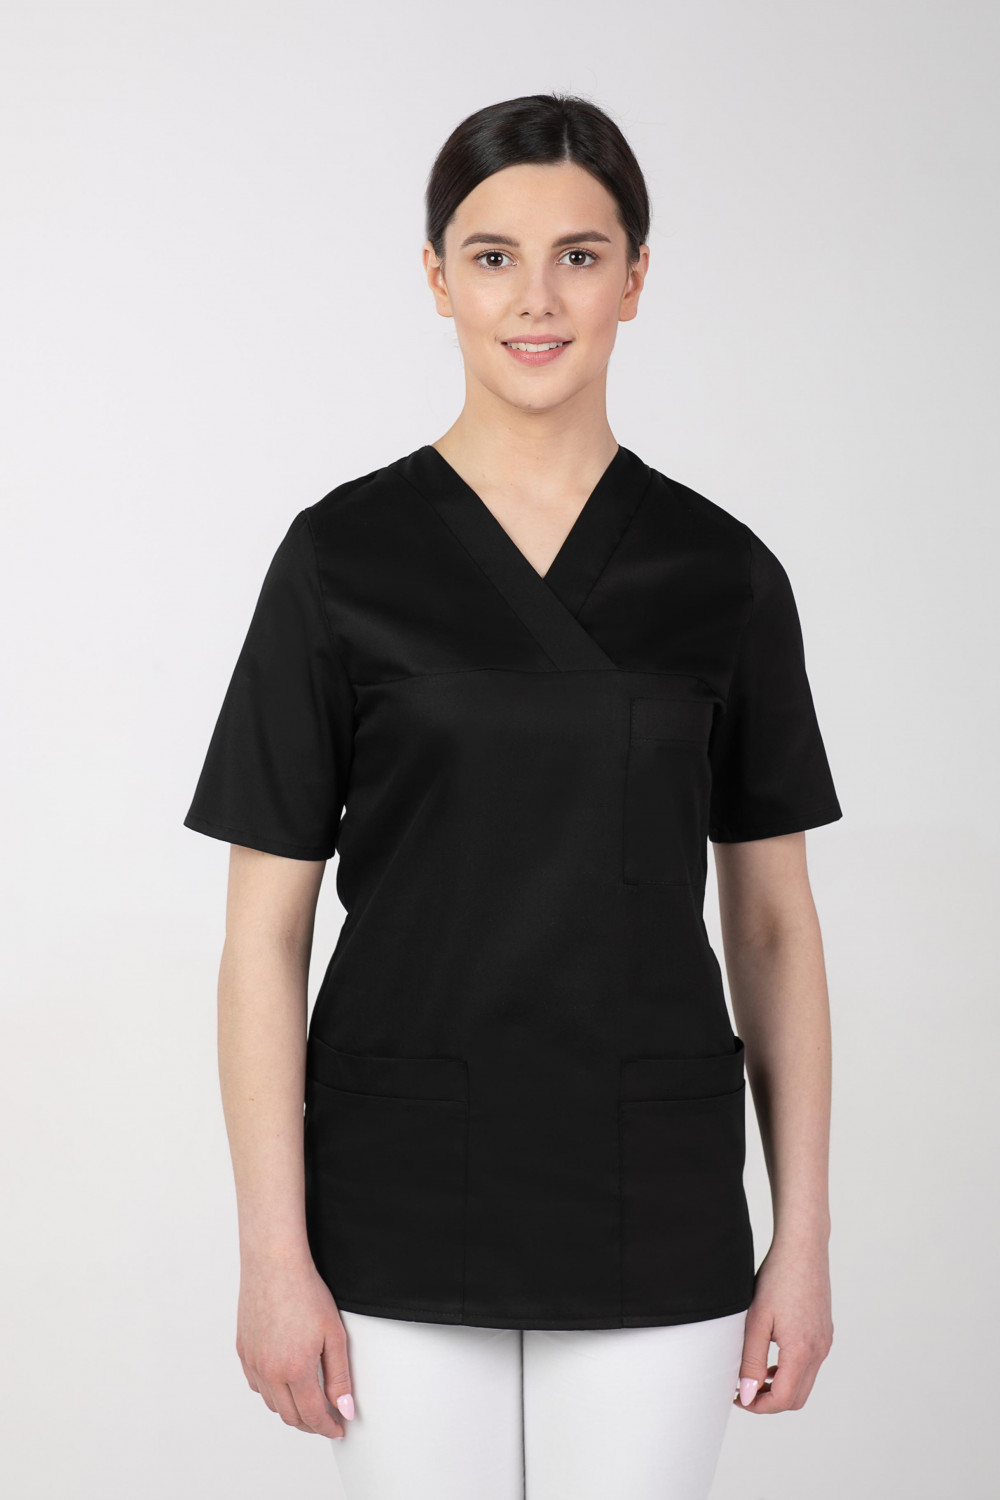 M-074 Bluza damska medyczna fartuch kosmetyczny kolor czarny